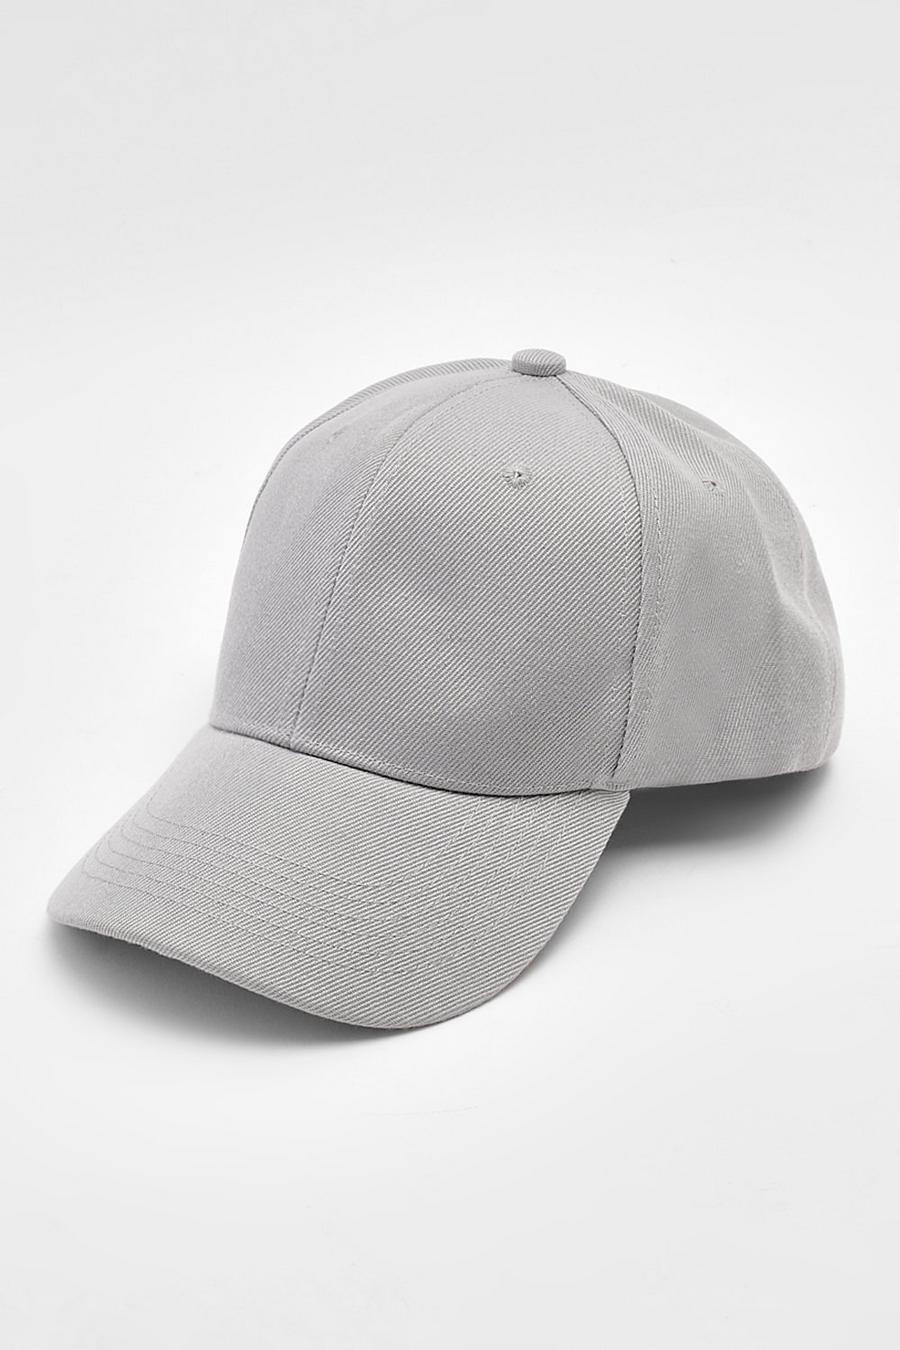 Plain Light Grey Baseball Cap